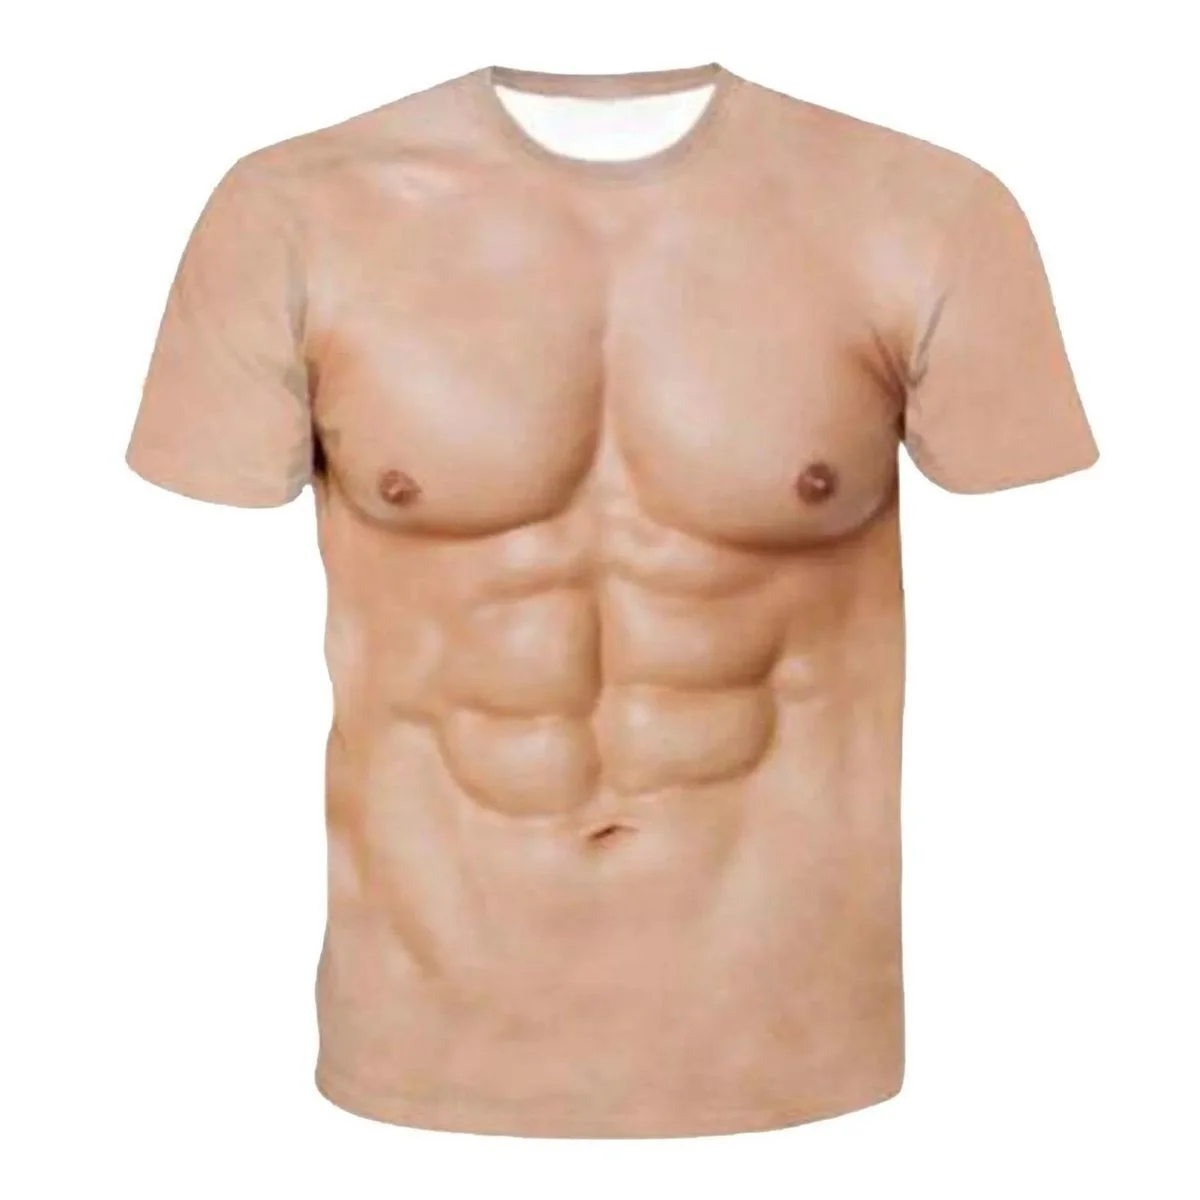 Летняя новая персонализированная креативная мужская одежда с забавными мышцами, цифровая печать 3D, сексуальная футболка с сильными мужскими мышцами живота